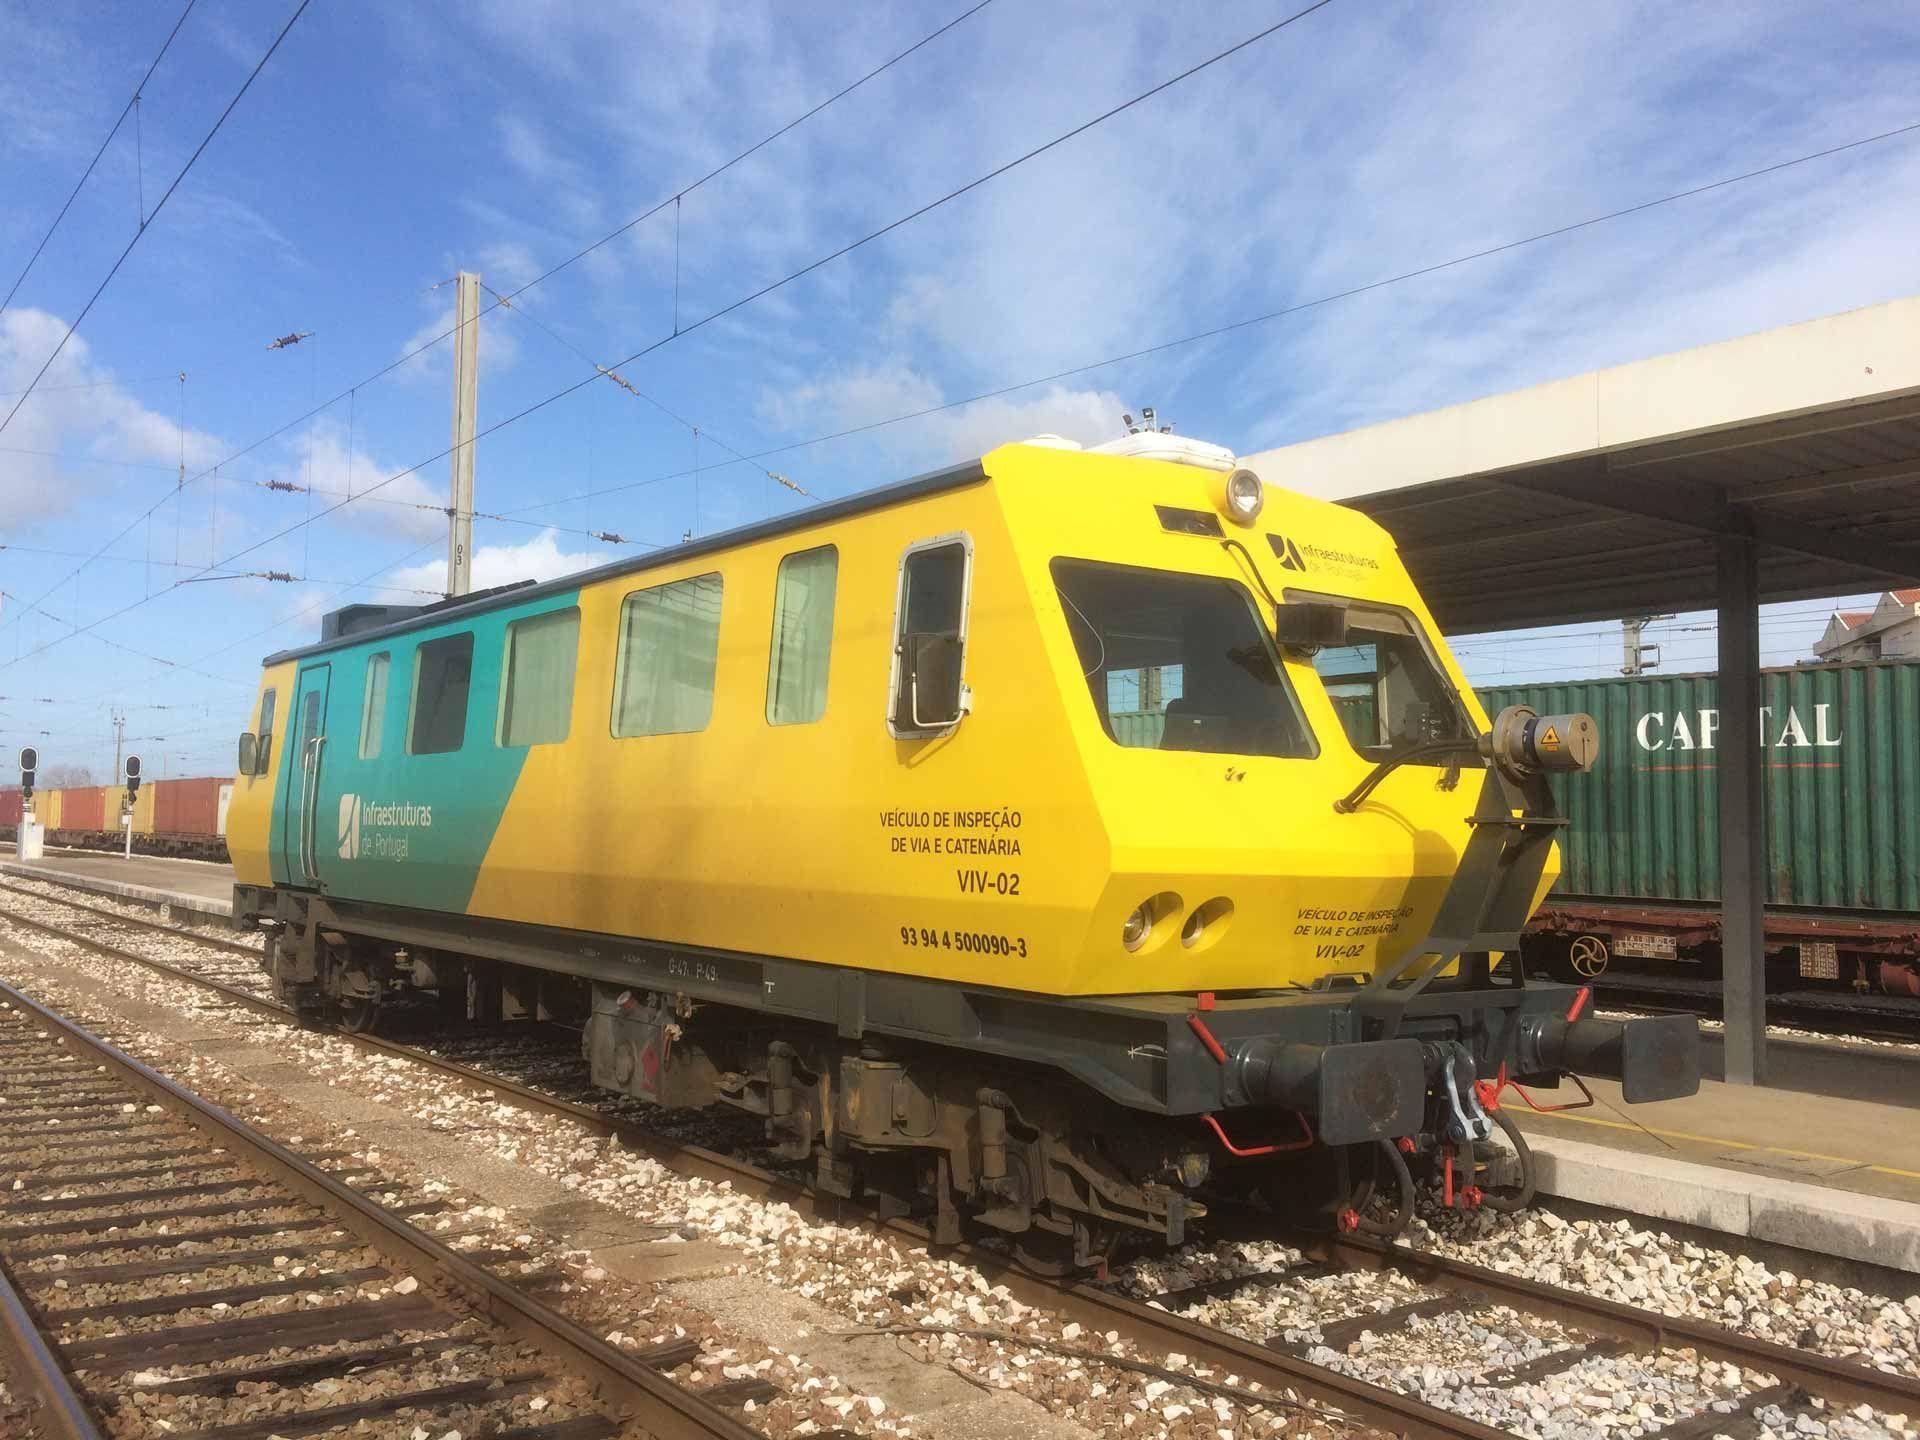 Ein gelber Eisenbahnwagen an einer Bahnhaltestelle in Portugal